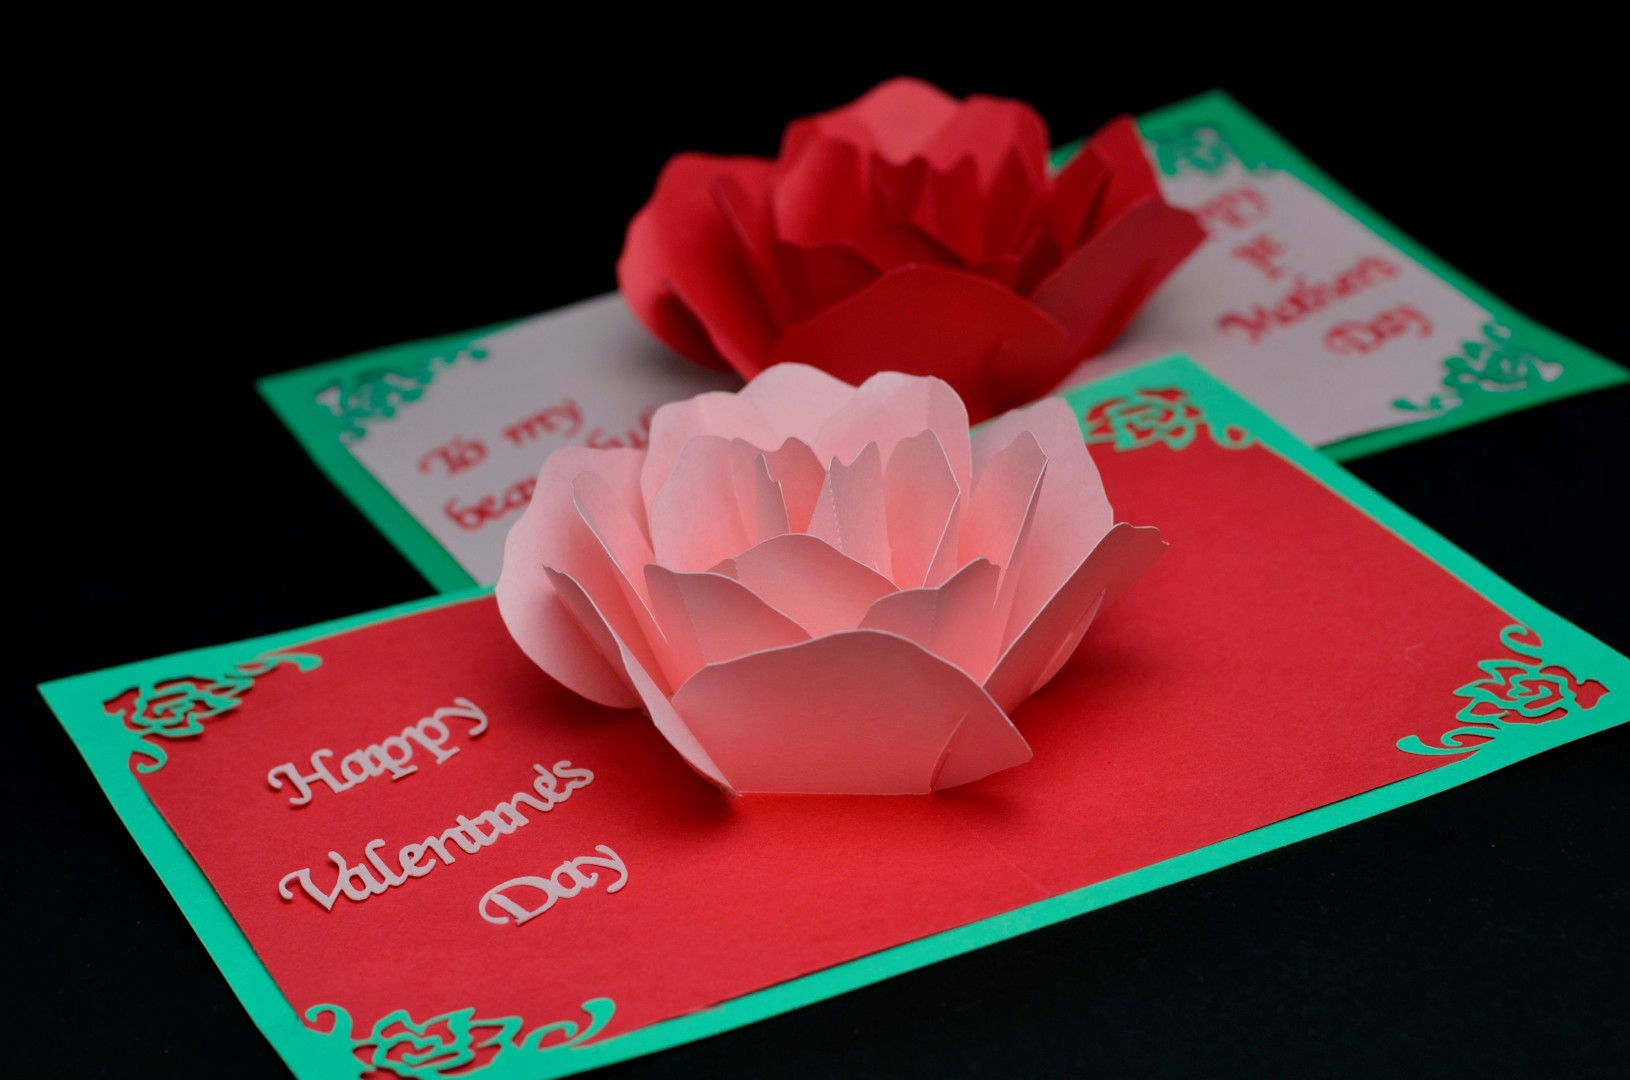 Rose Flower Pop Up Card Template - Creative Pop Up Cards Inside Free Pop Up Card Templates Download